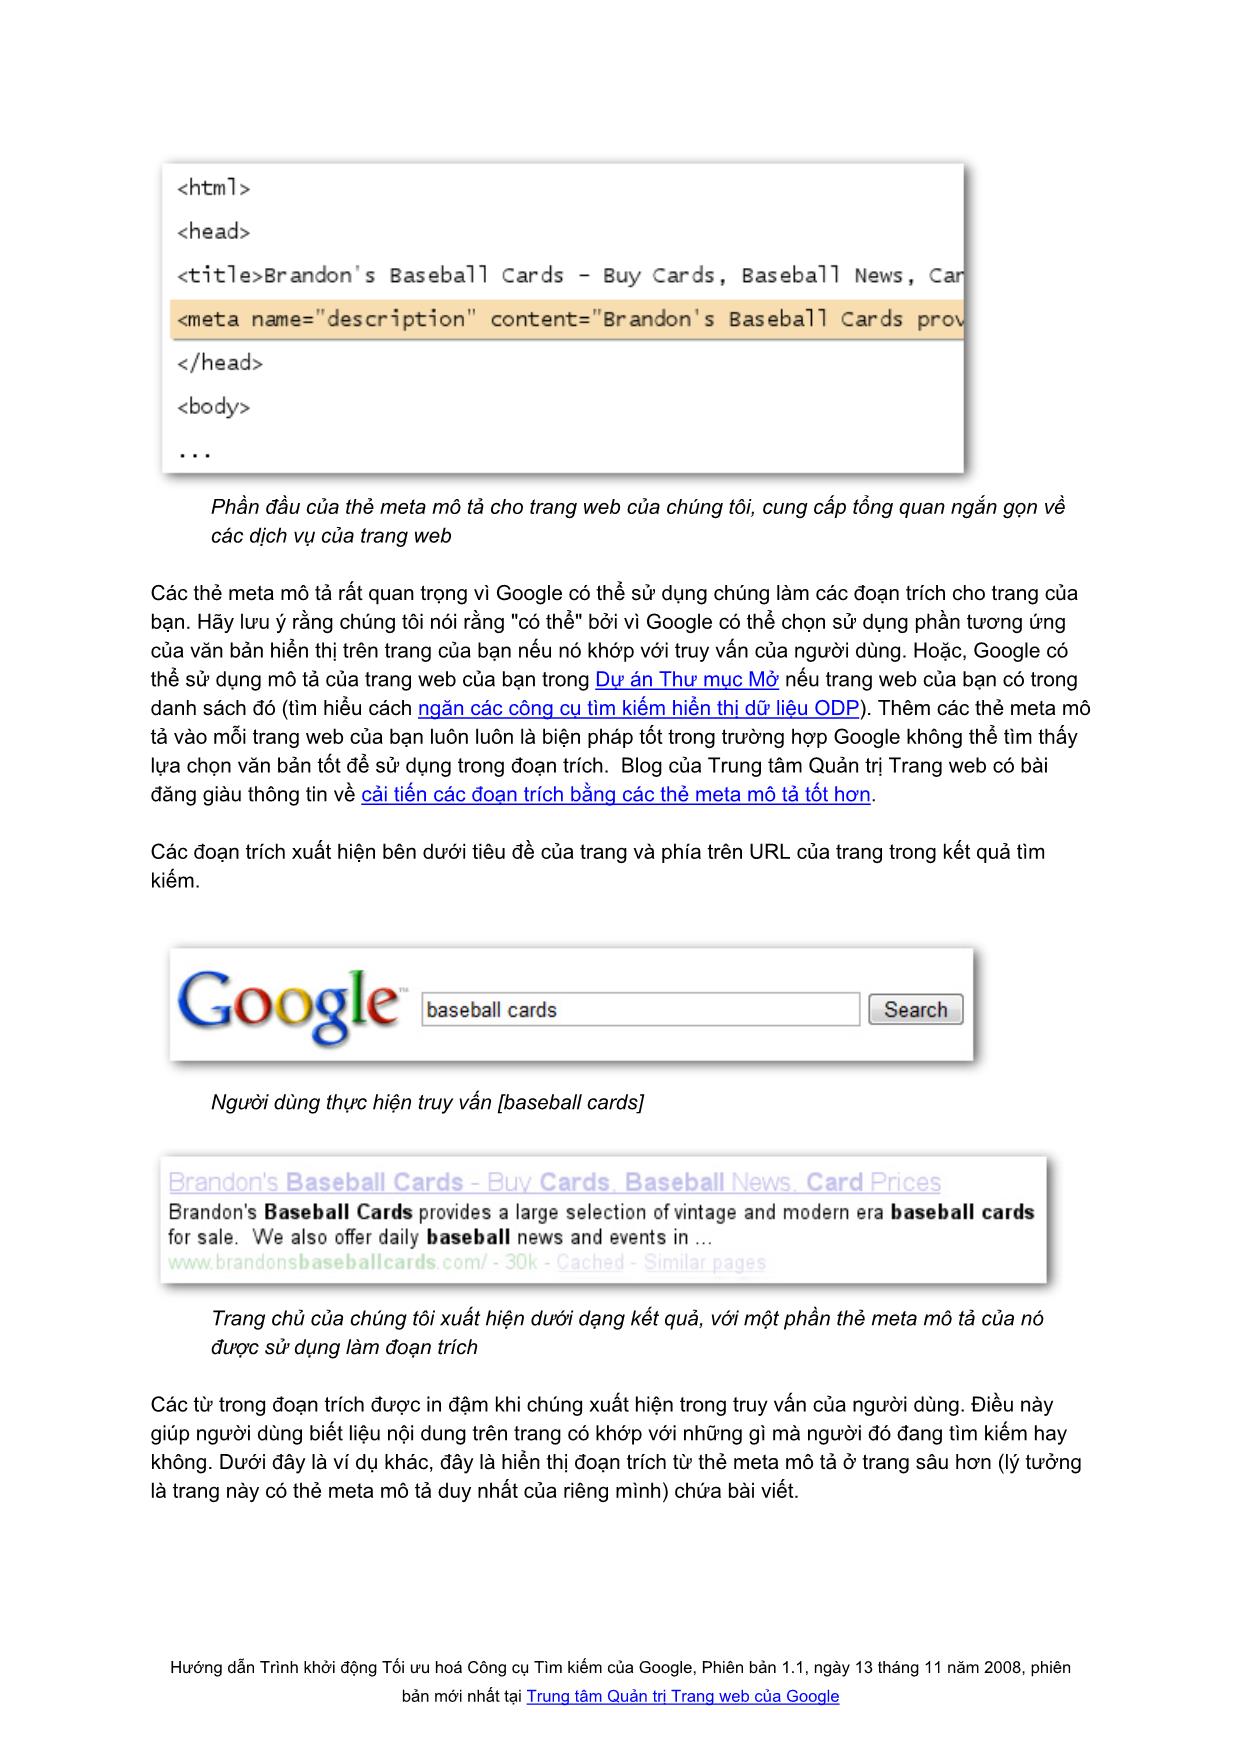 Hướng dẫn trình khởi động tối ưu hoá công cụ tìm kiếm của google trang 5